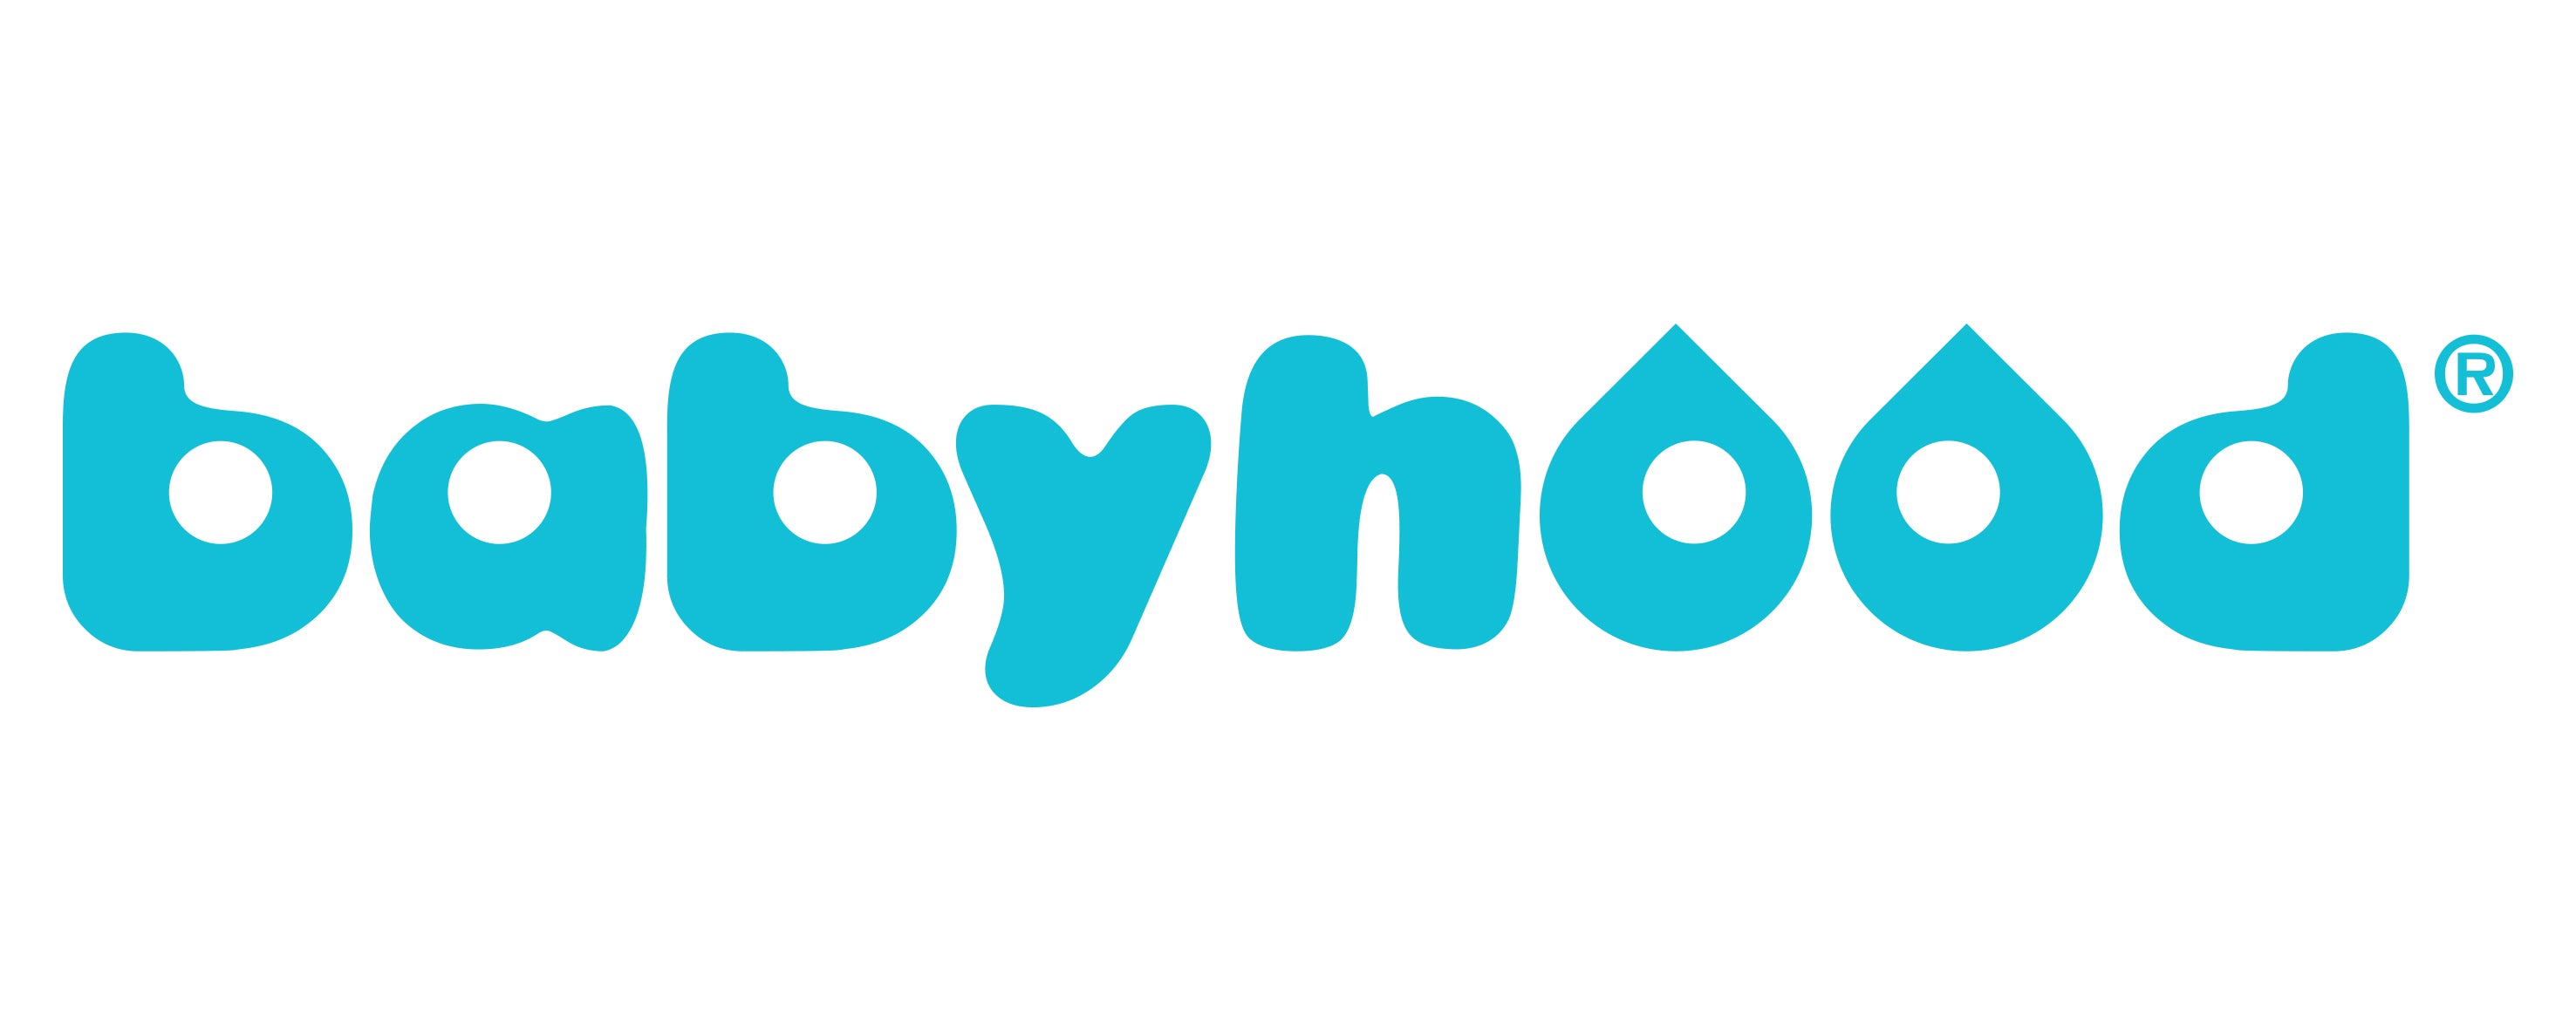 Babyhood logo